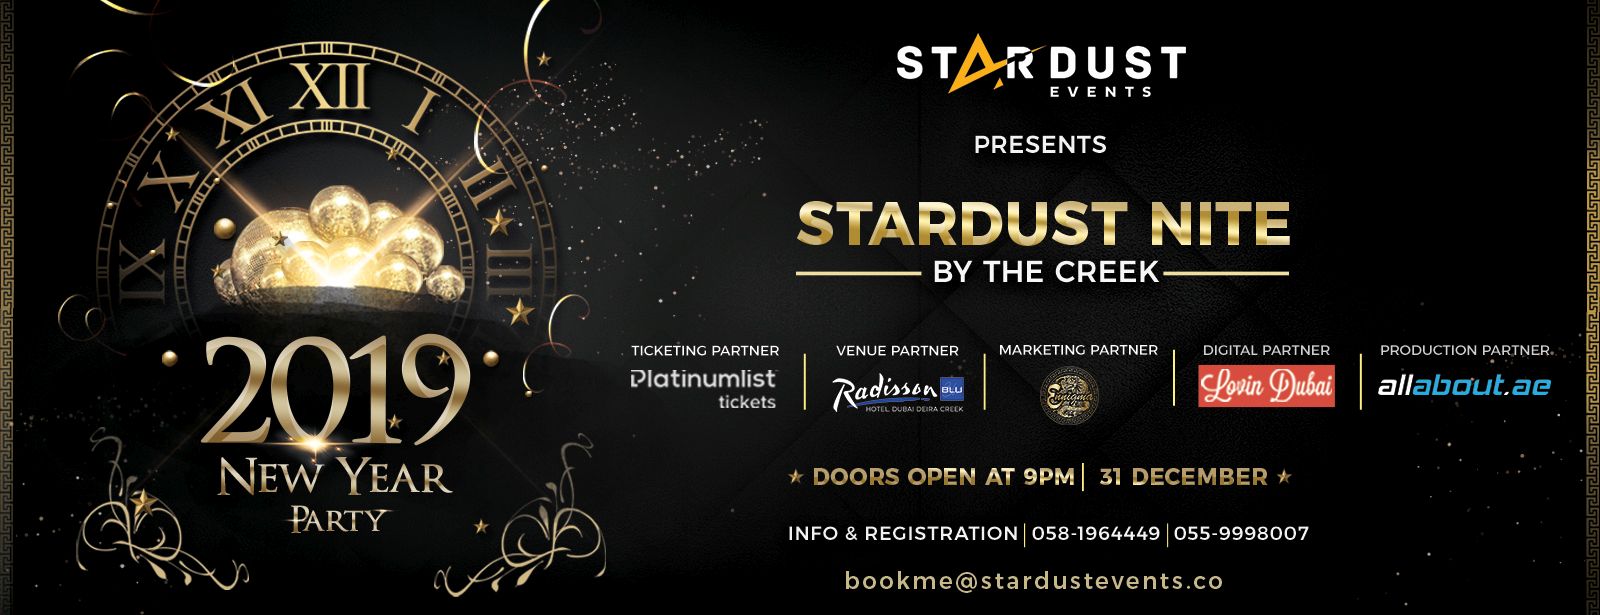 Stardust Nite – By The Creek - Coming Soon in UAE